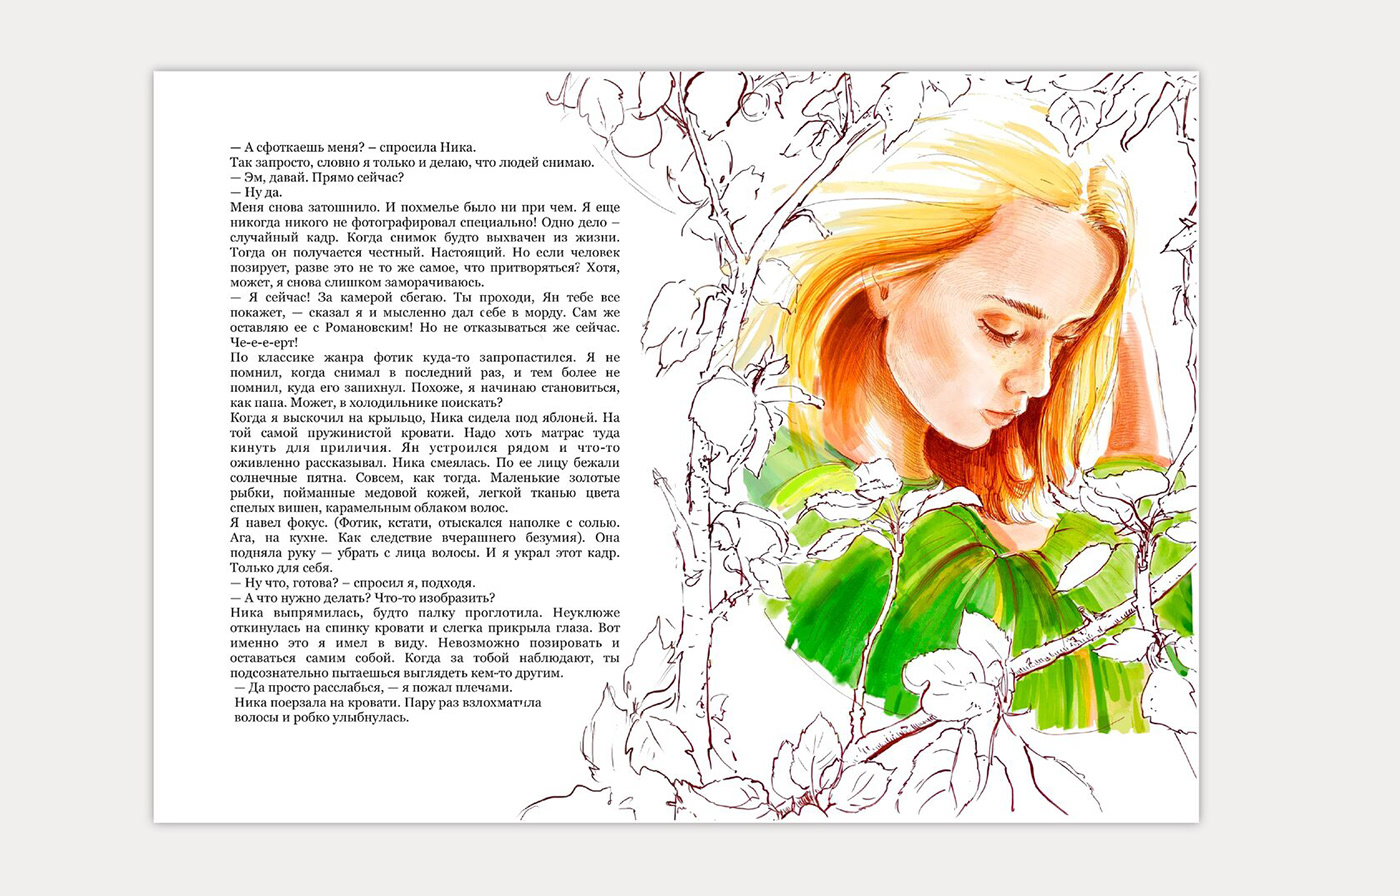 book illustration book cover book design ILLUSTRATION  sketching ink книга для детей книжная иллюстрация bookcoverdesign bookcoverart